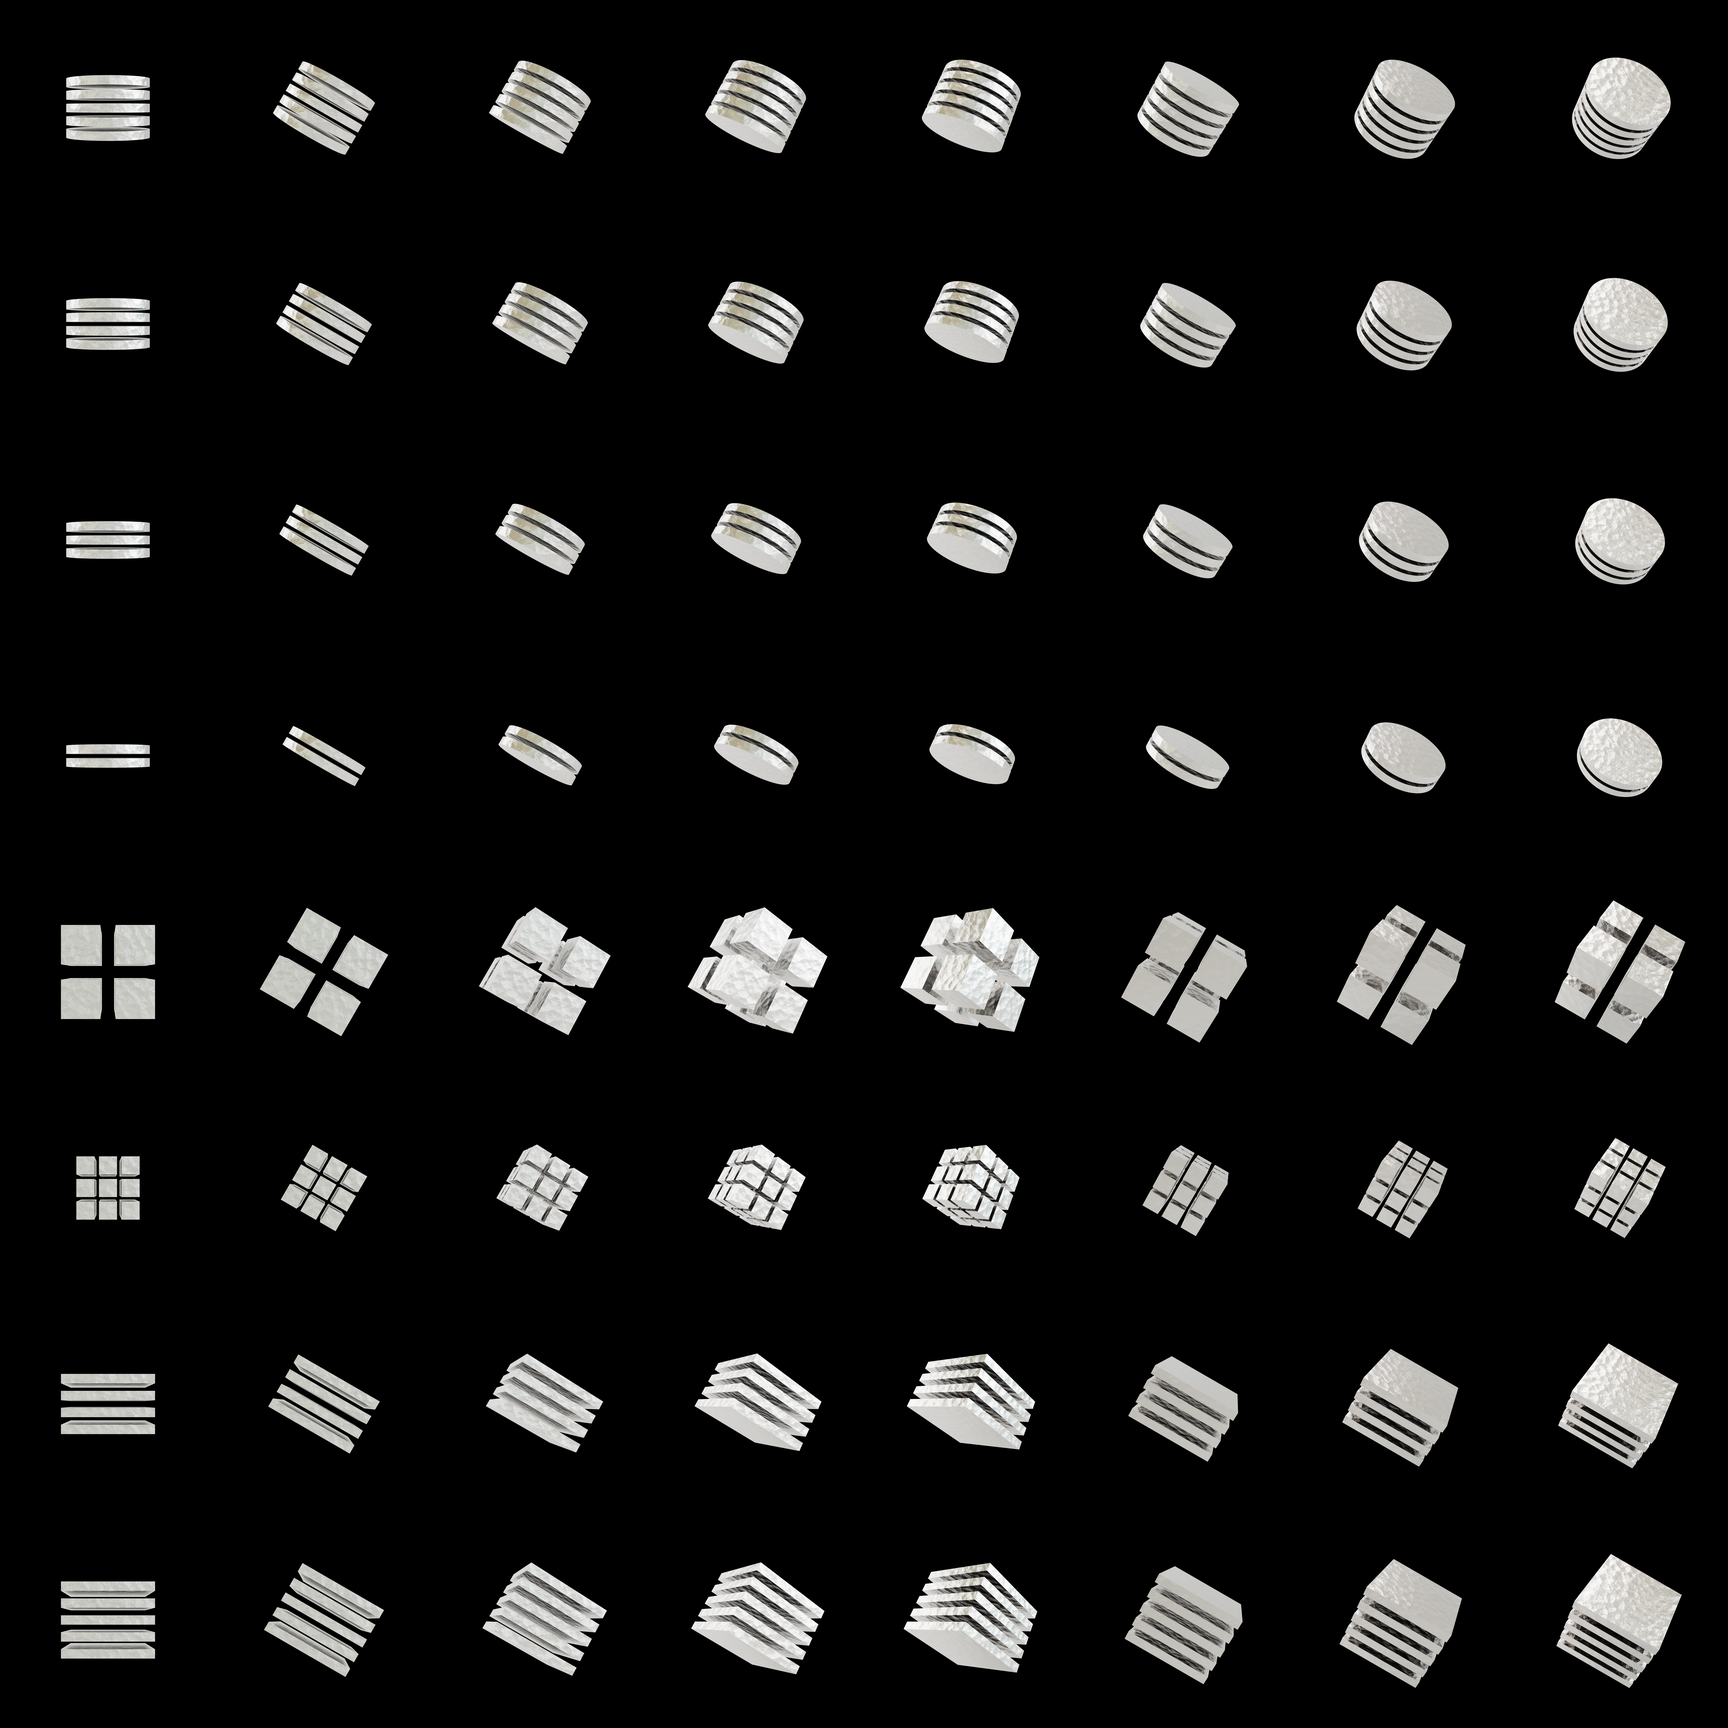 The Bundle - cmp.aluminium-foil/z tile image 1